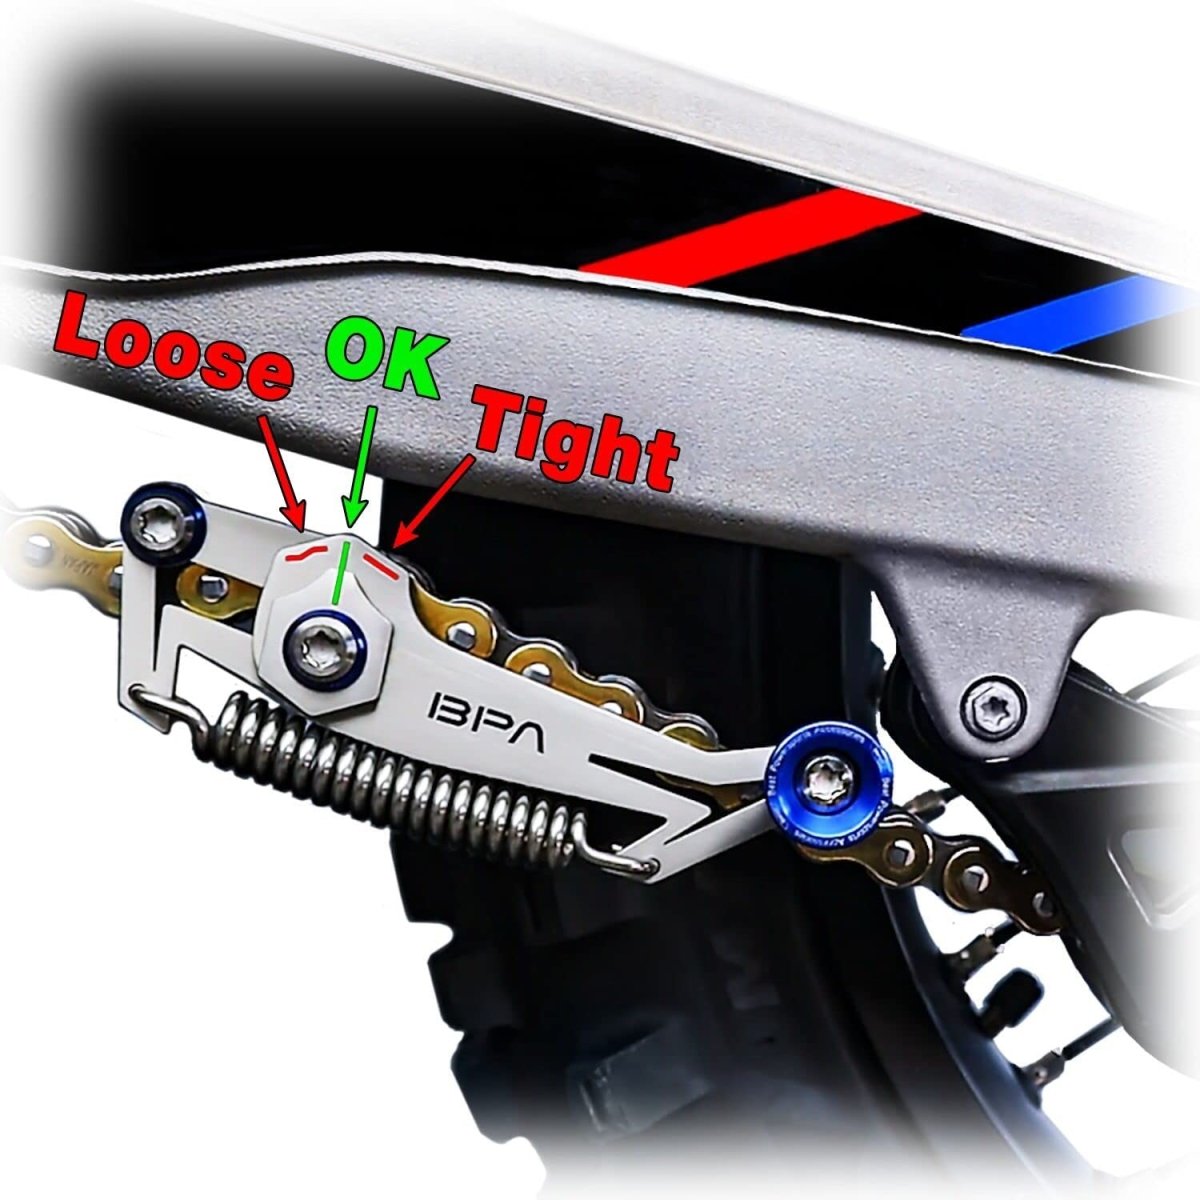 Support de moto haut de gamme, arrière – BPA RACING FRANCE : OUTILS ET ACCESSOIRES  MOTO